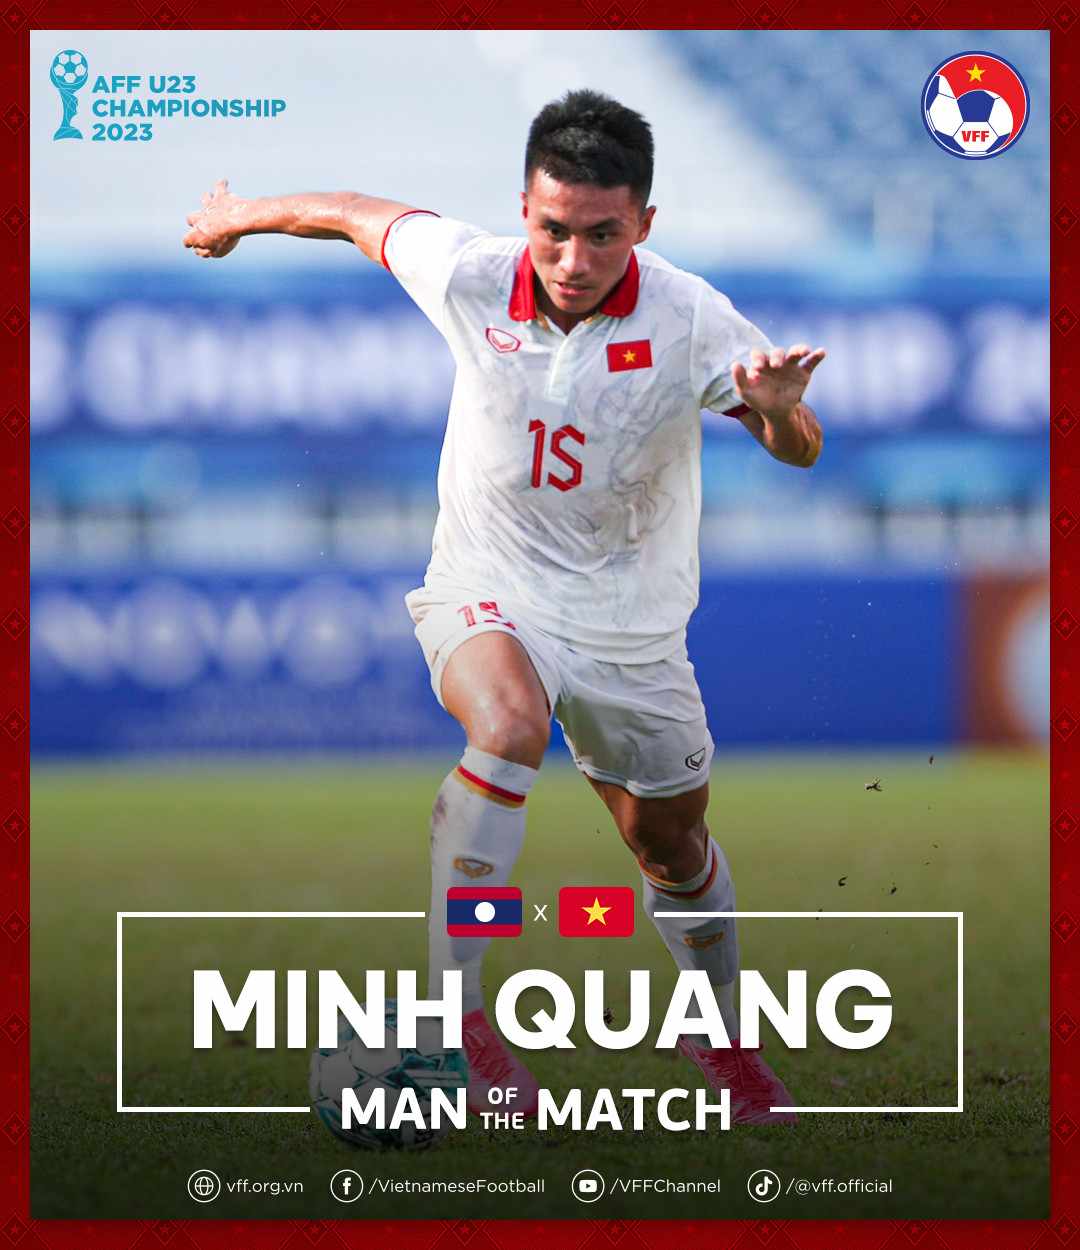 Minh Quang xuất sắc nhất trận U23 Việt Nam - U23 Lào. Ảnh: VFF